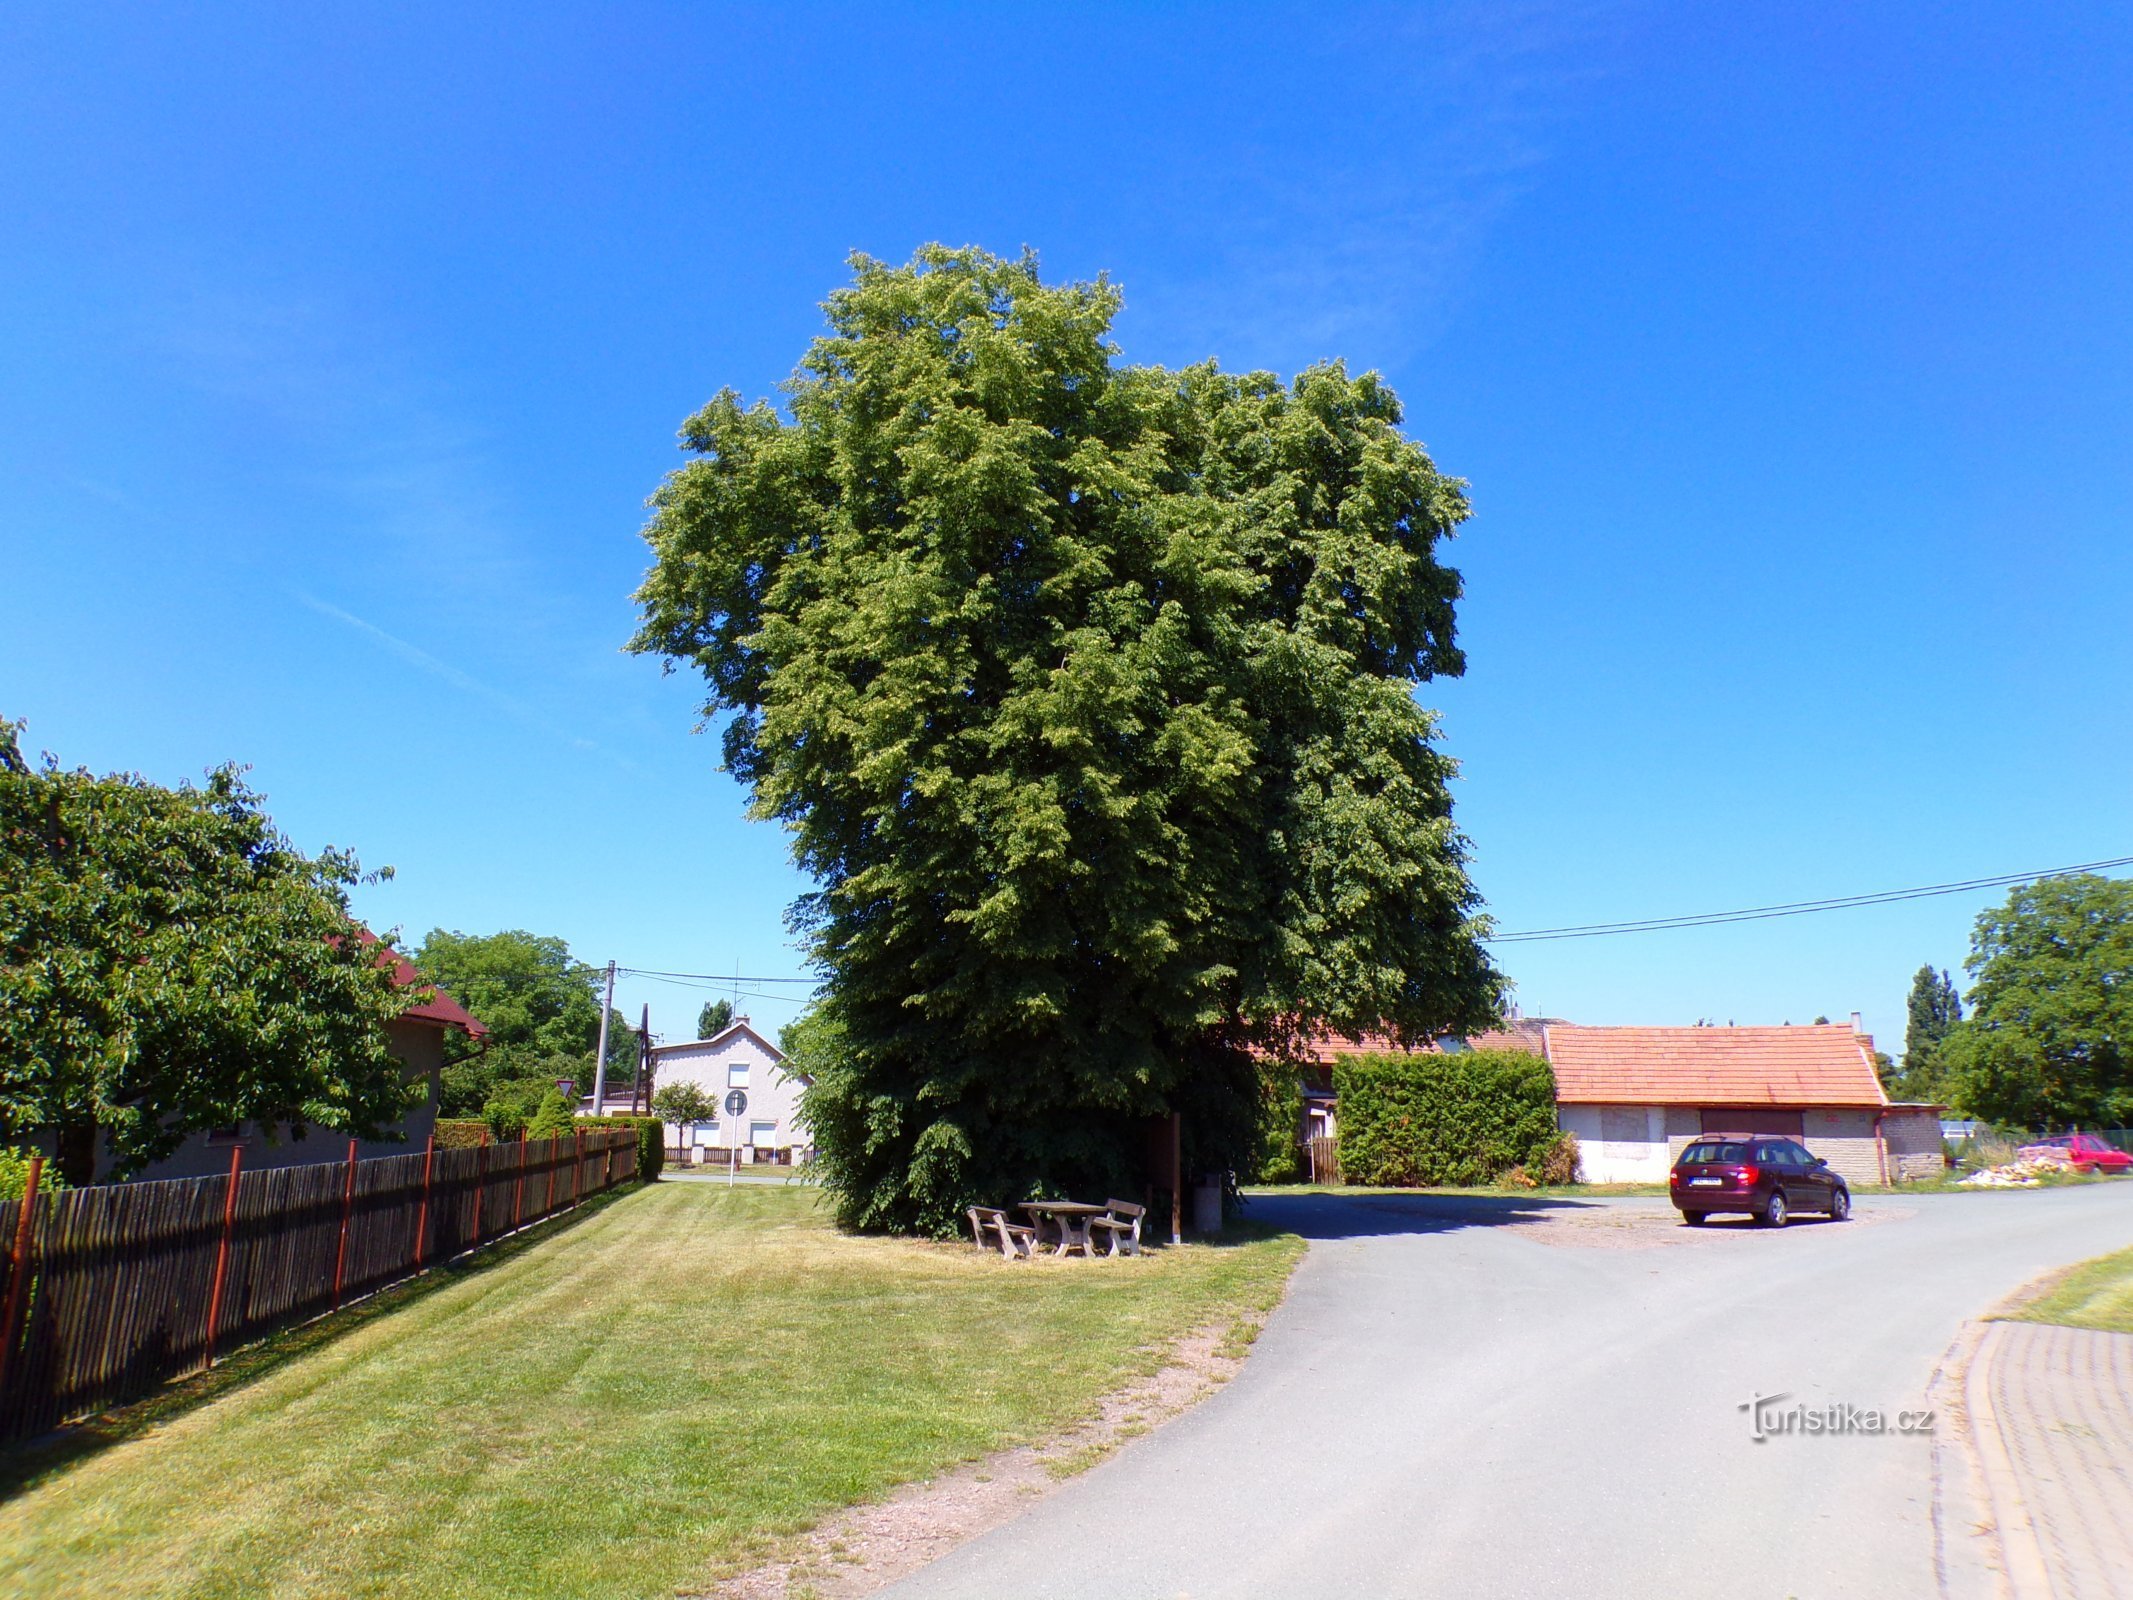 Lindebomen bij het kruis van Kuklin (Dobřenice, 15.6.2022/XNUMX/XNUMX)